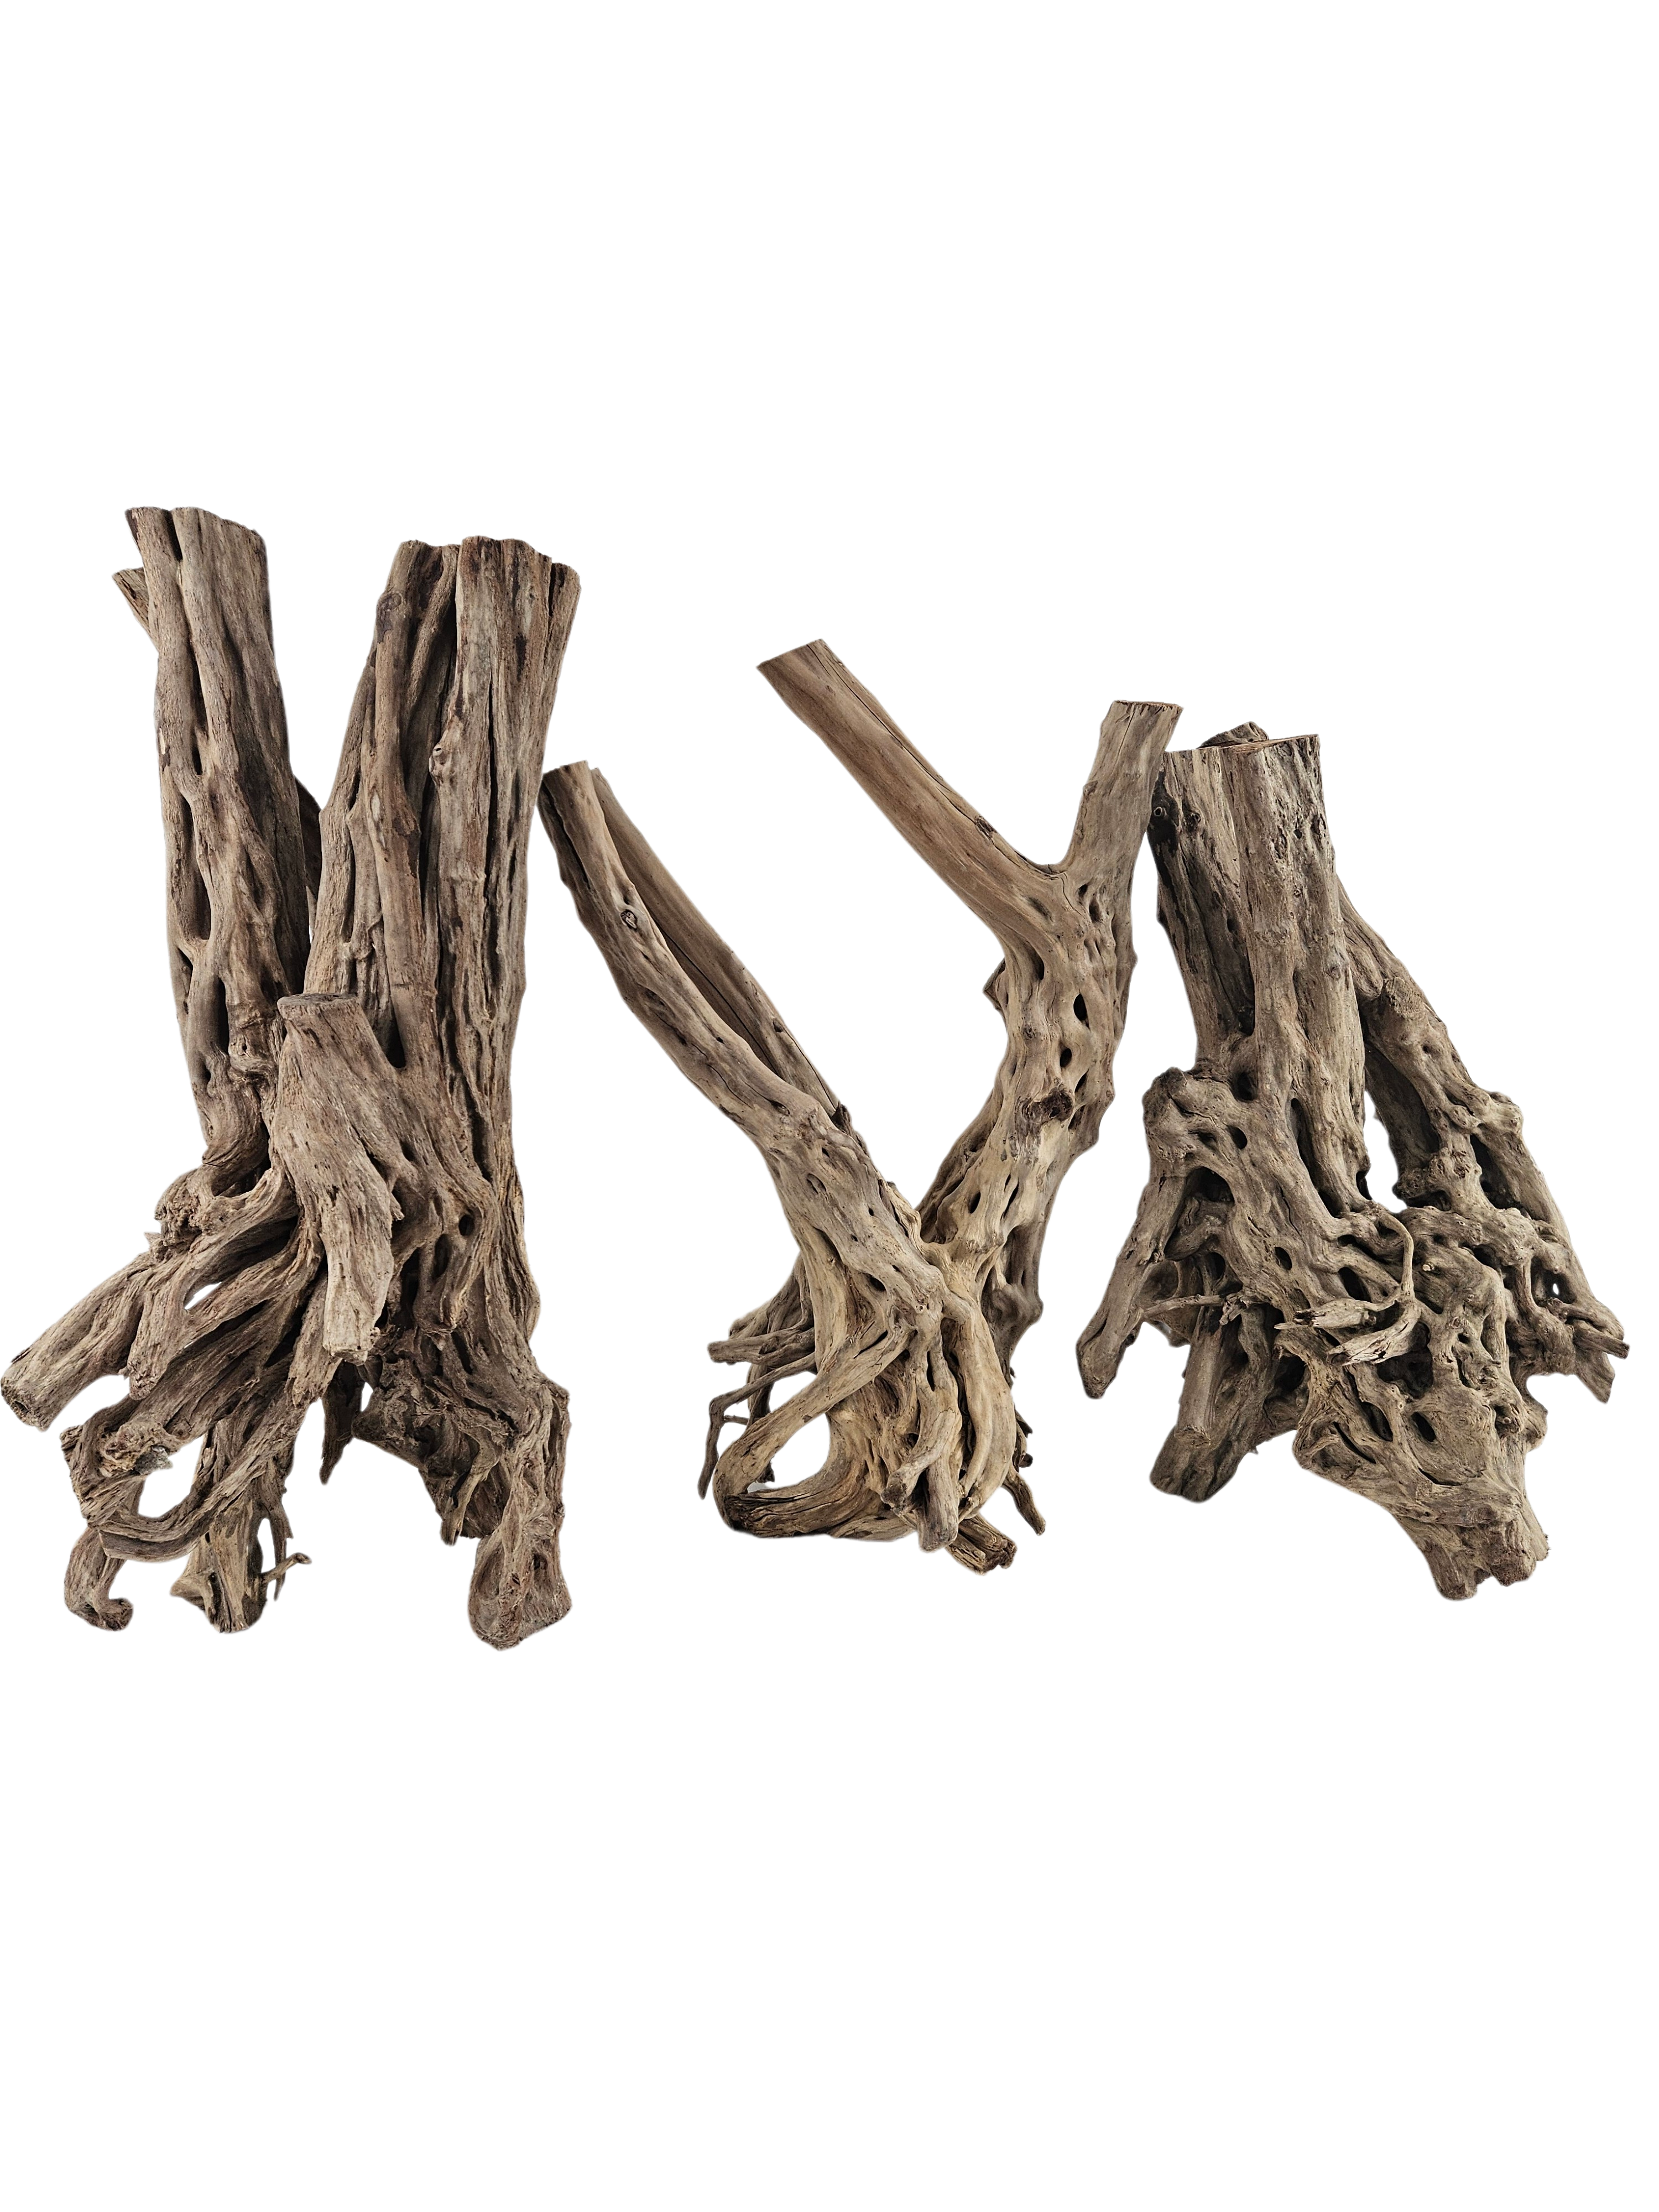 Spiderwood Tree Stump for Aquarium by Lifegard Aquatics